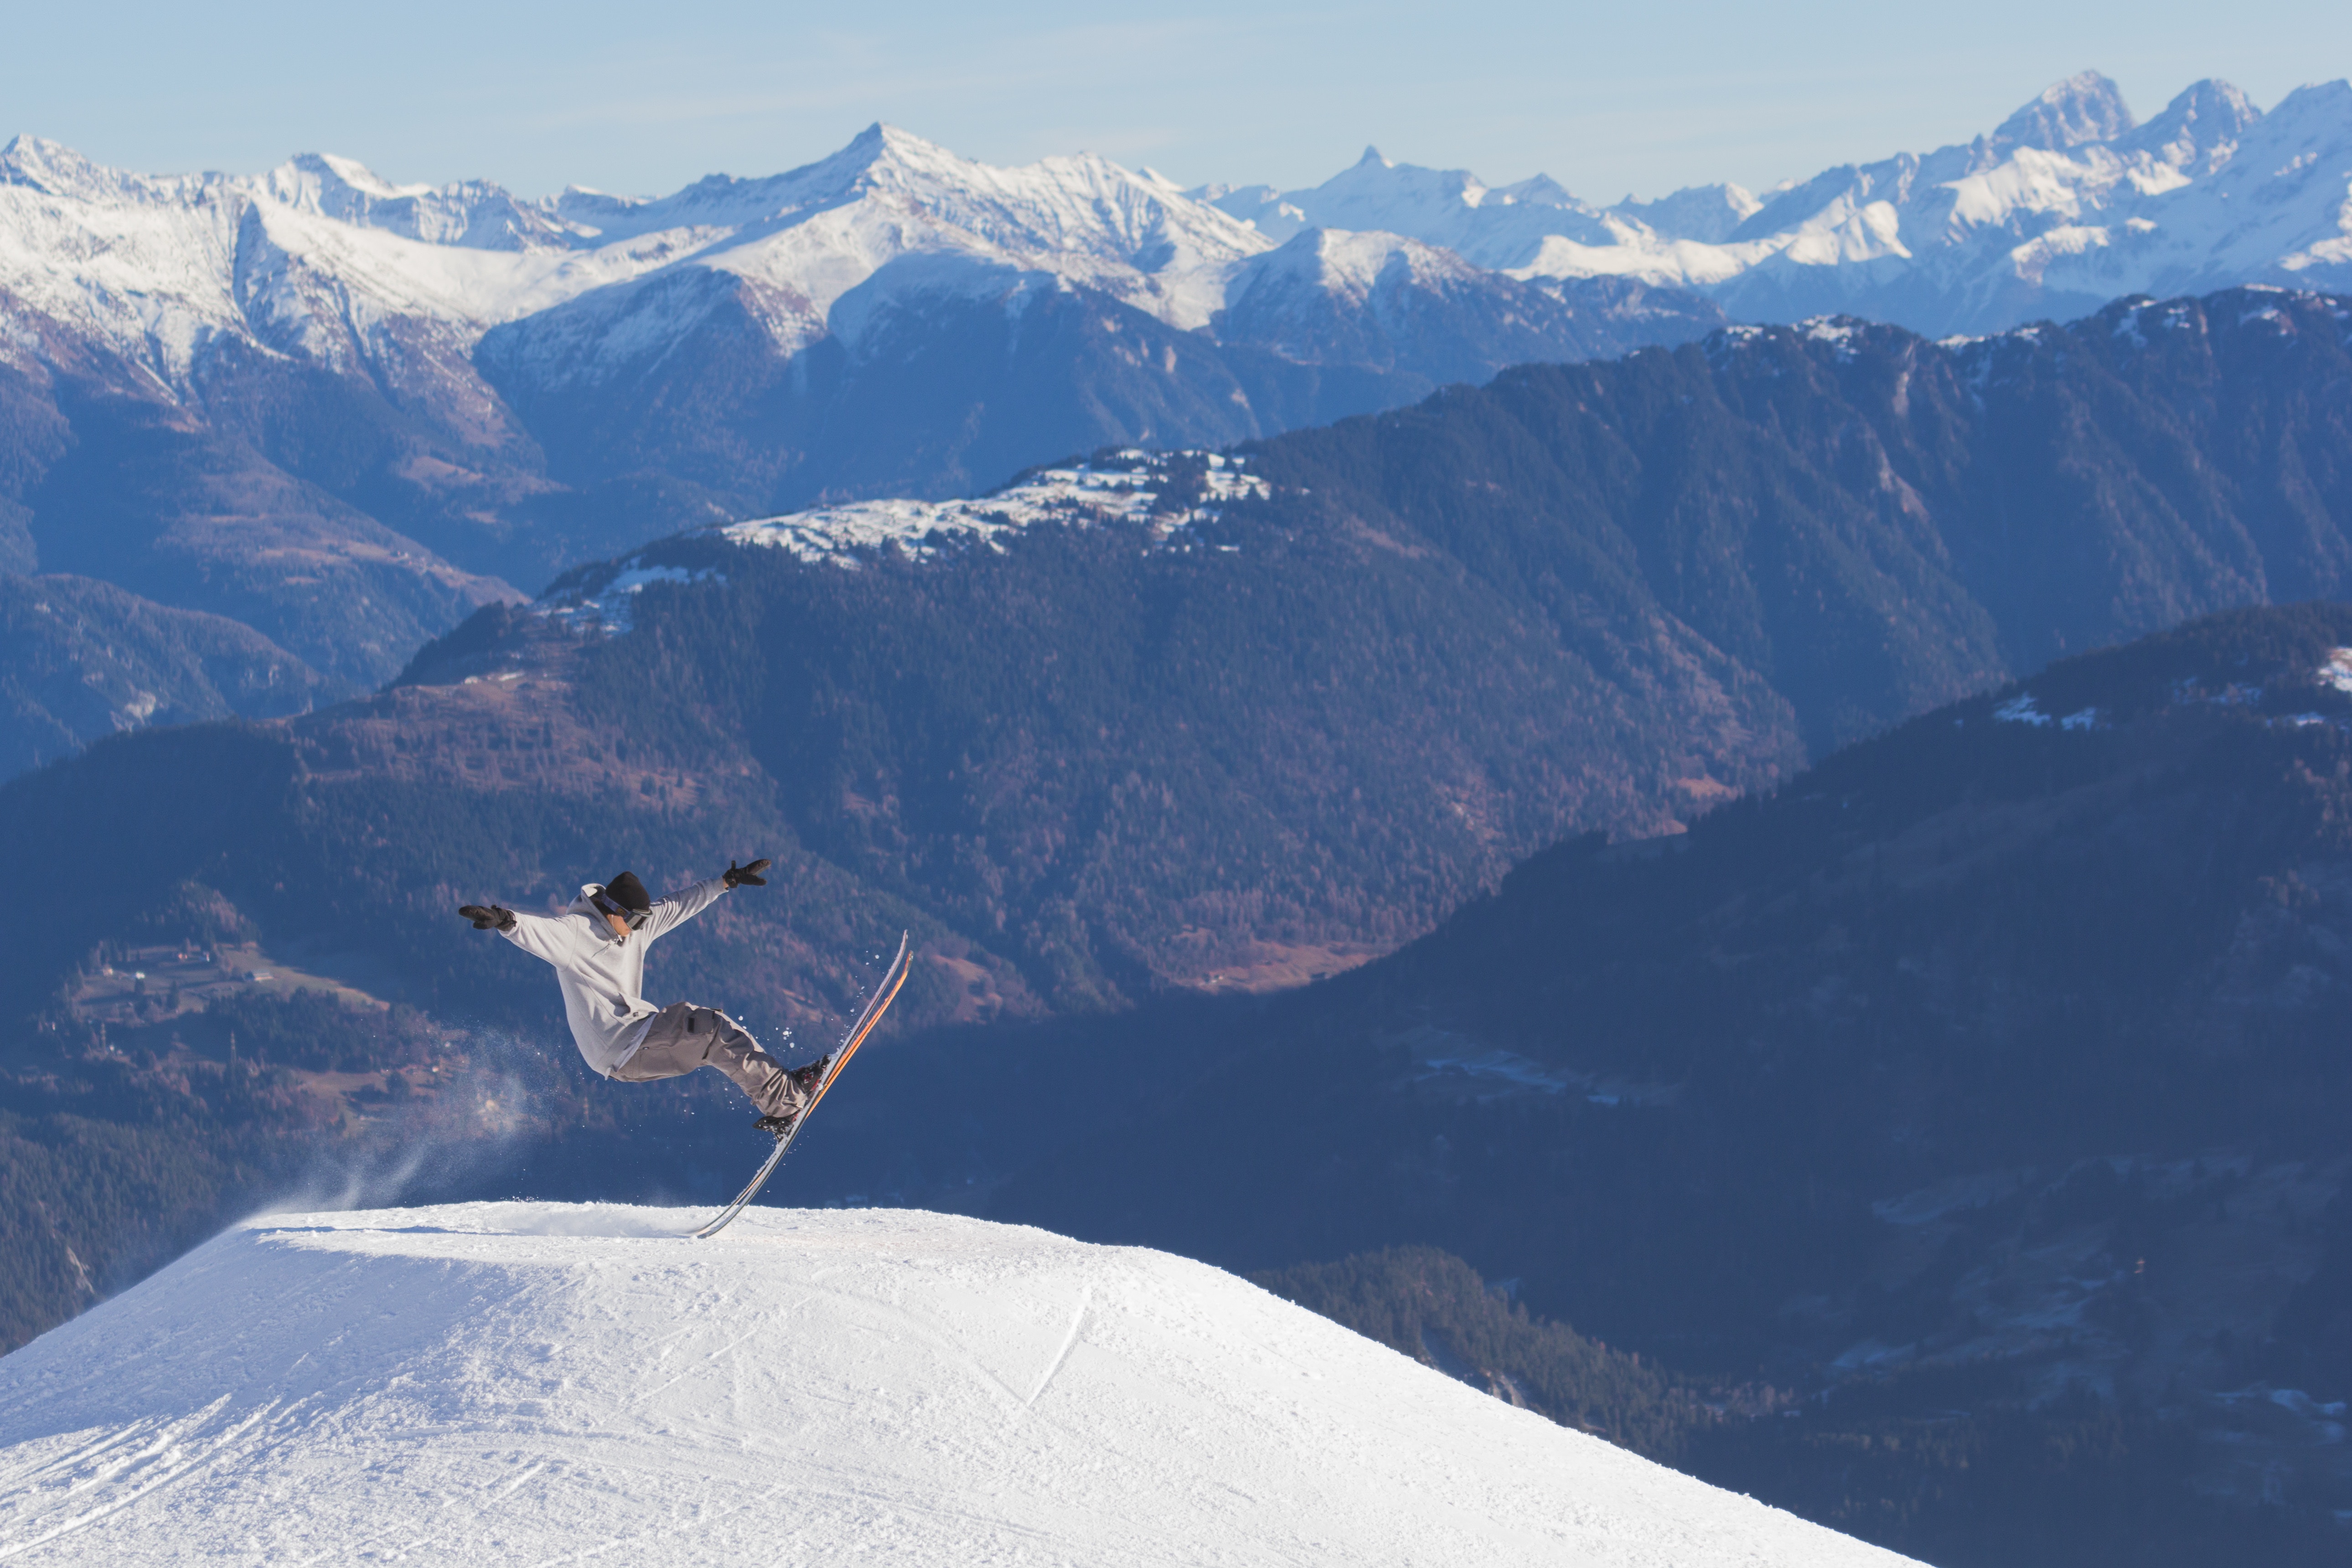 Lavar casacos de neve: veja dicas de ir esquiar